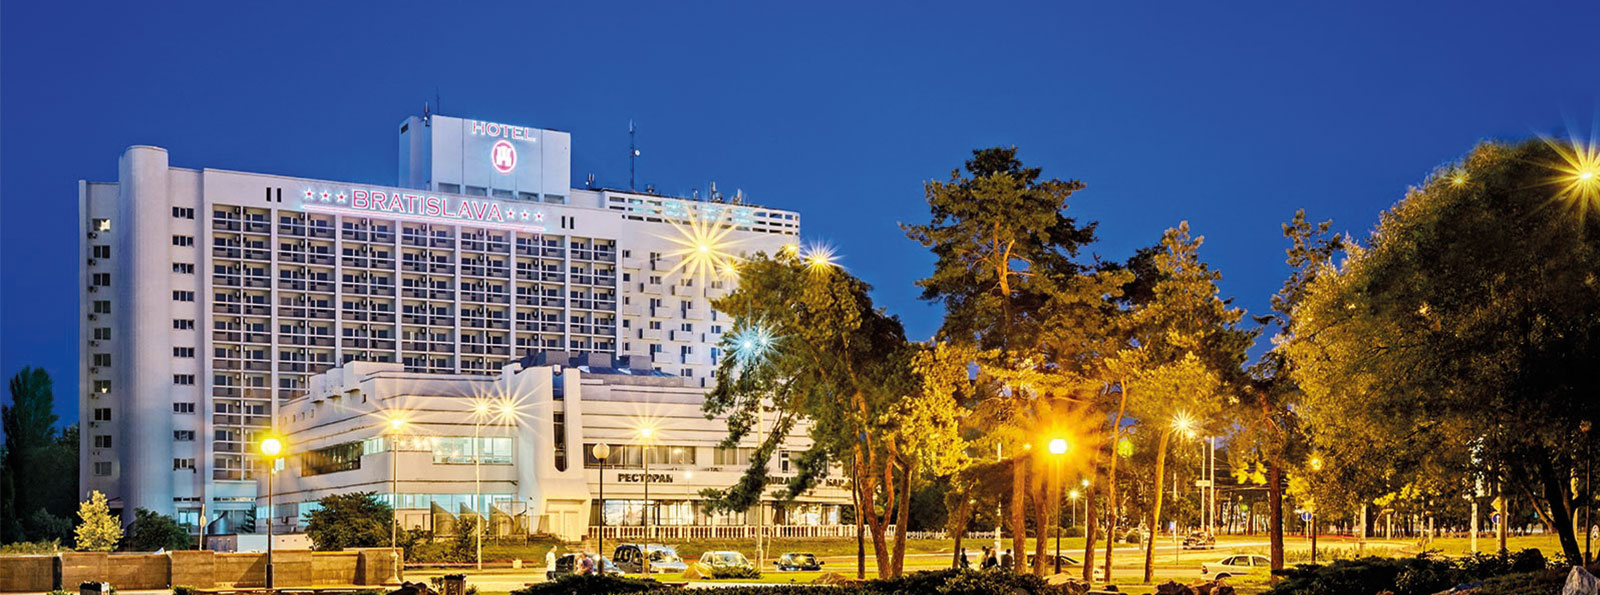 7 من افضل فنادق كييف نُرشحها لك لعطلتك القادمة 